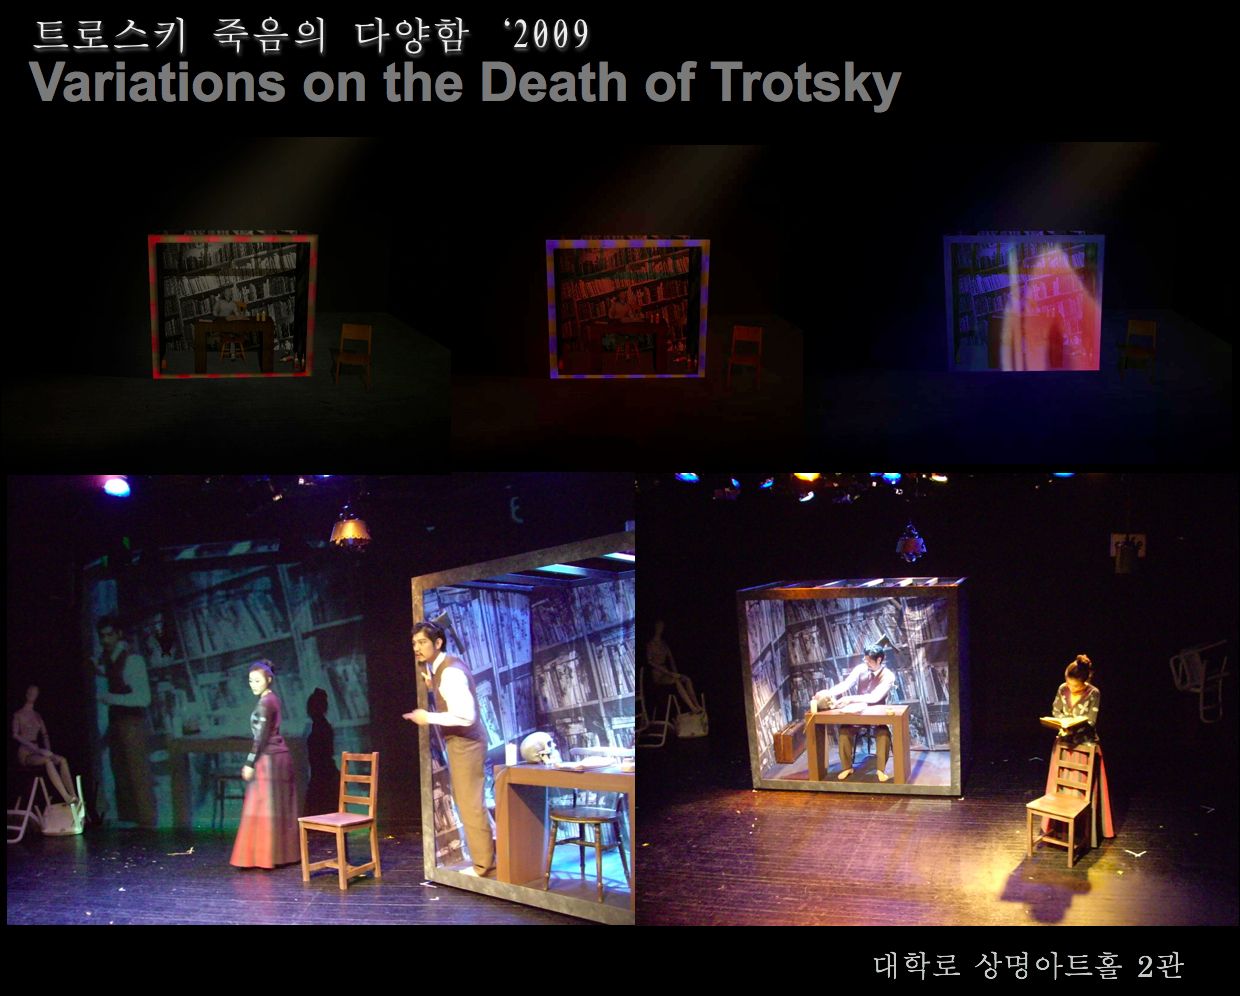 트로스키 죽음의 다양함(Variations on the Death of Trotsky)